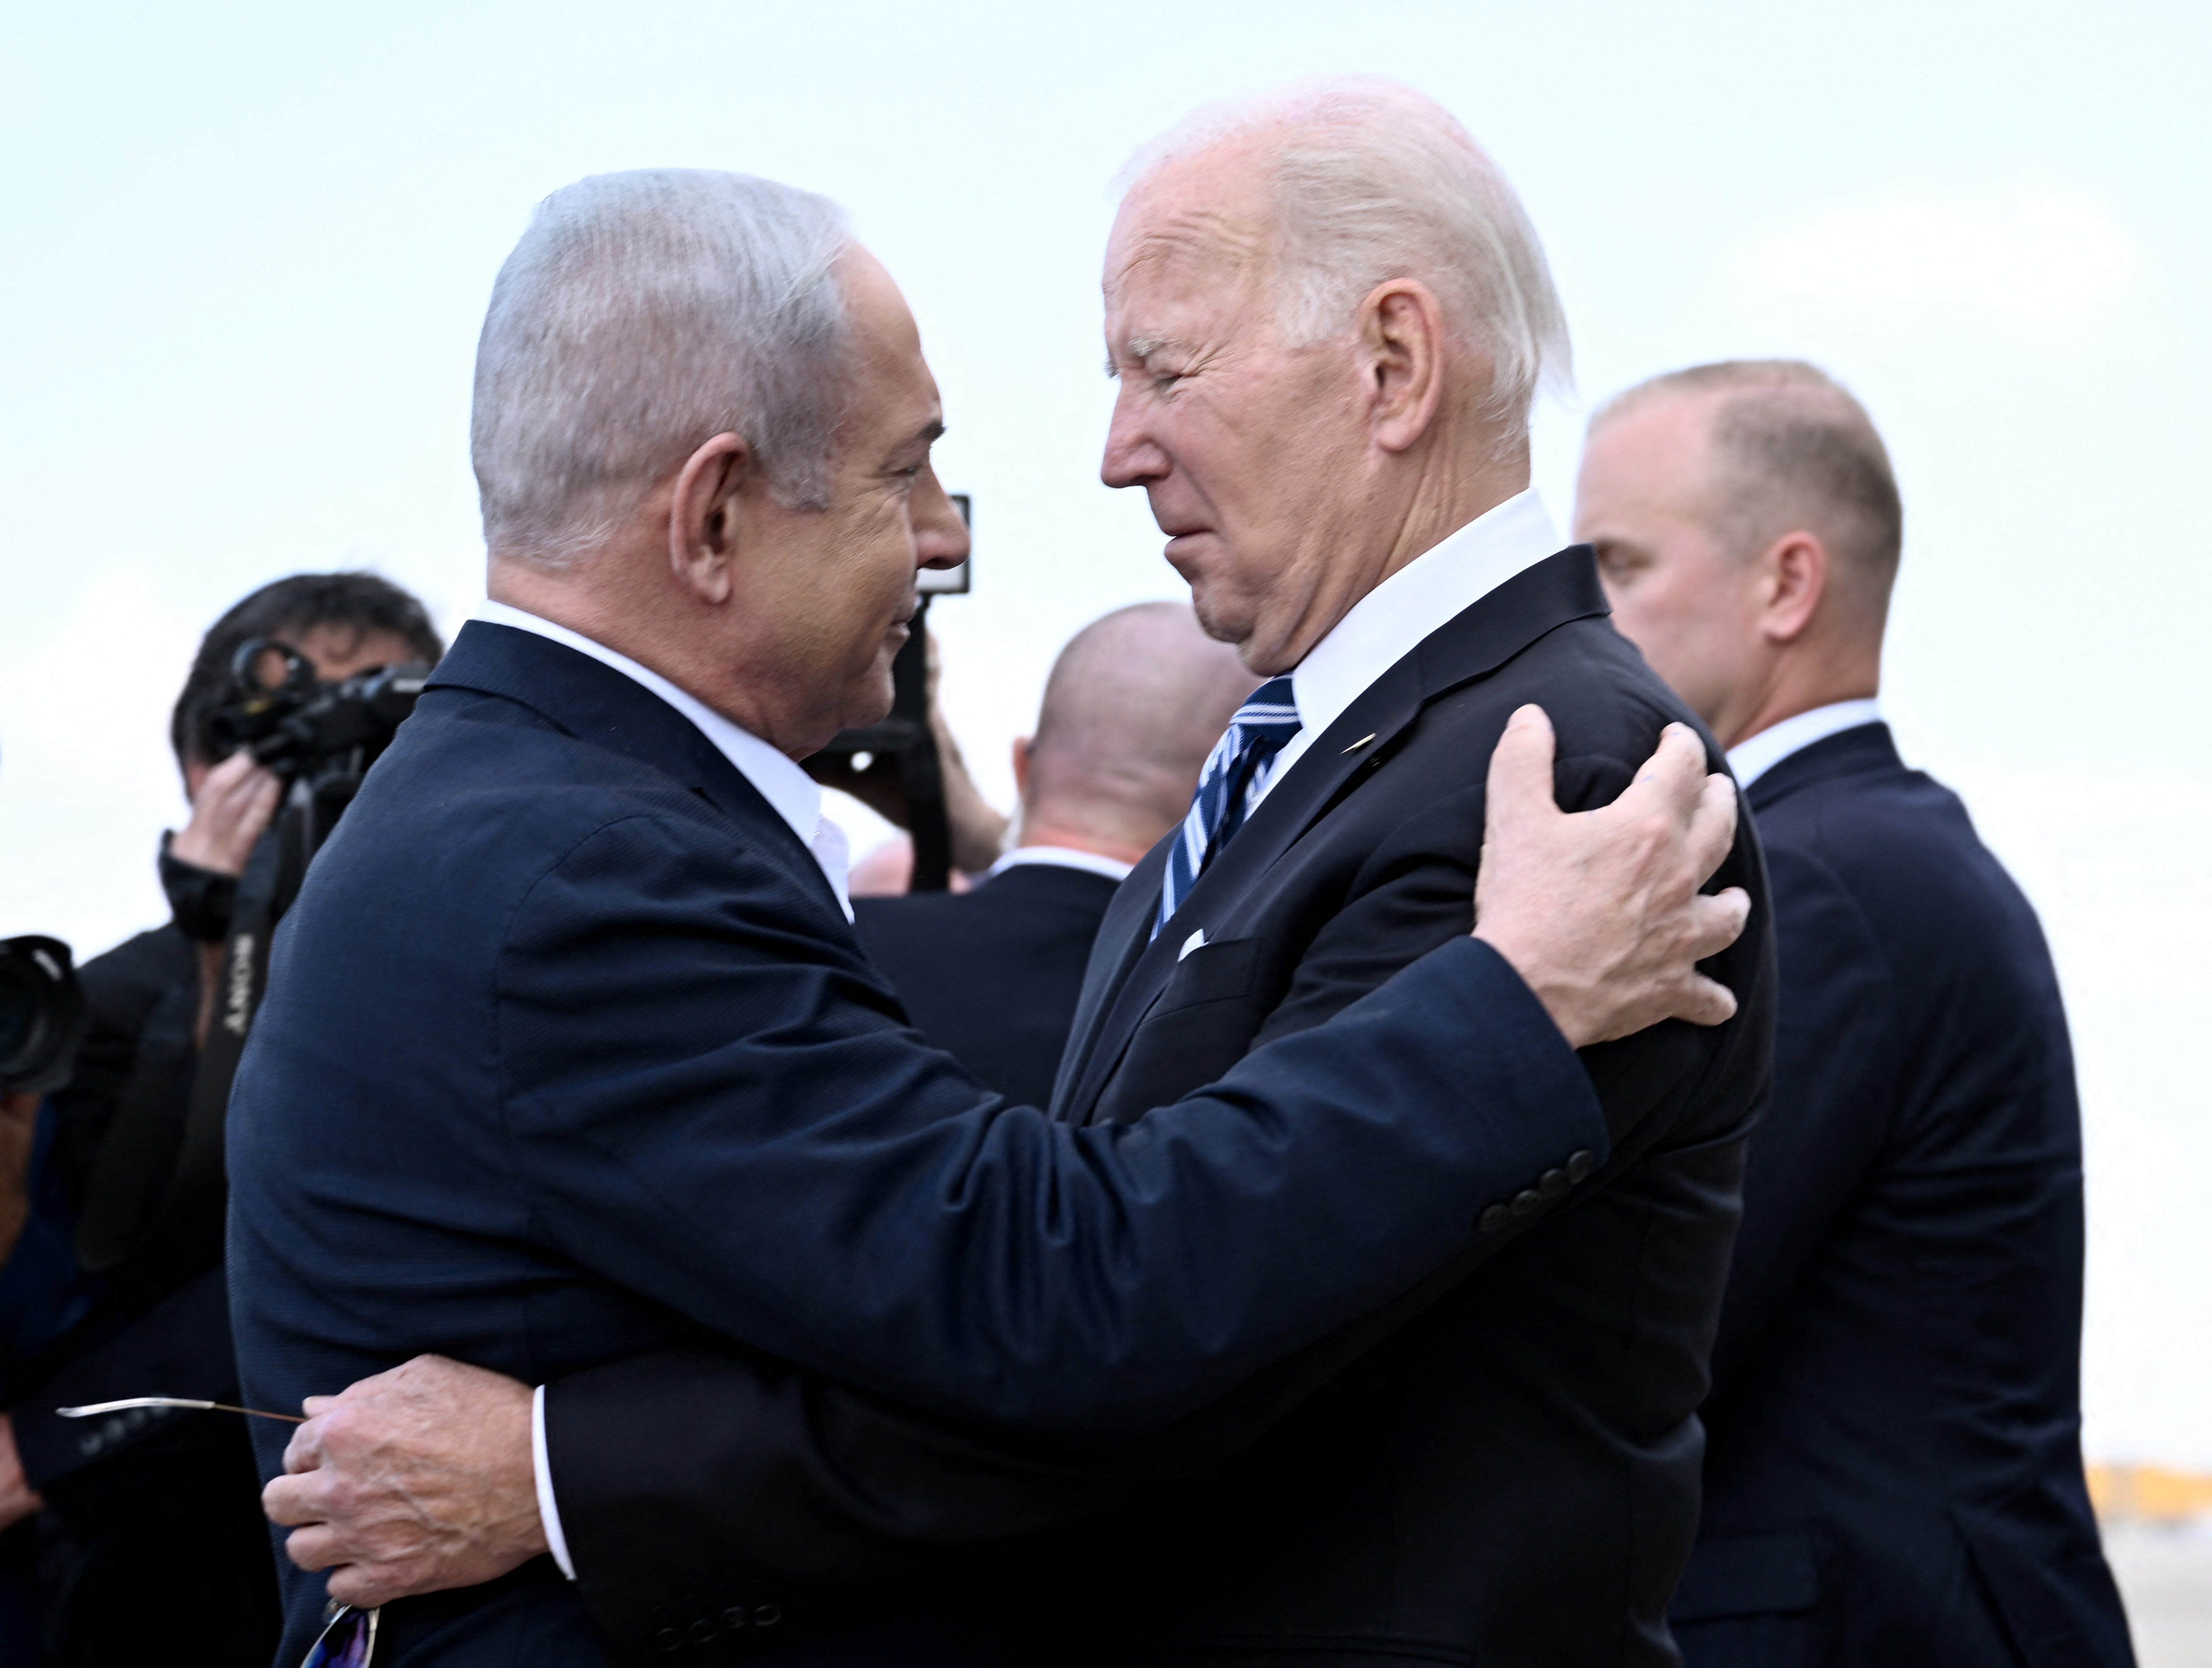 Netanyahu and Biden have been long-term allies